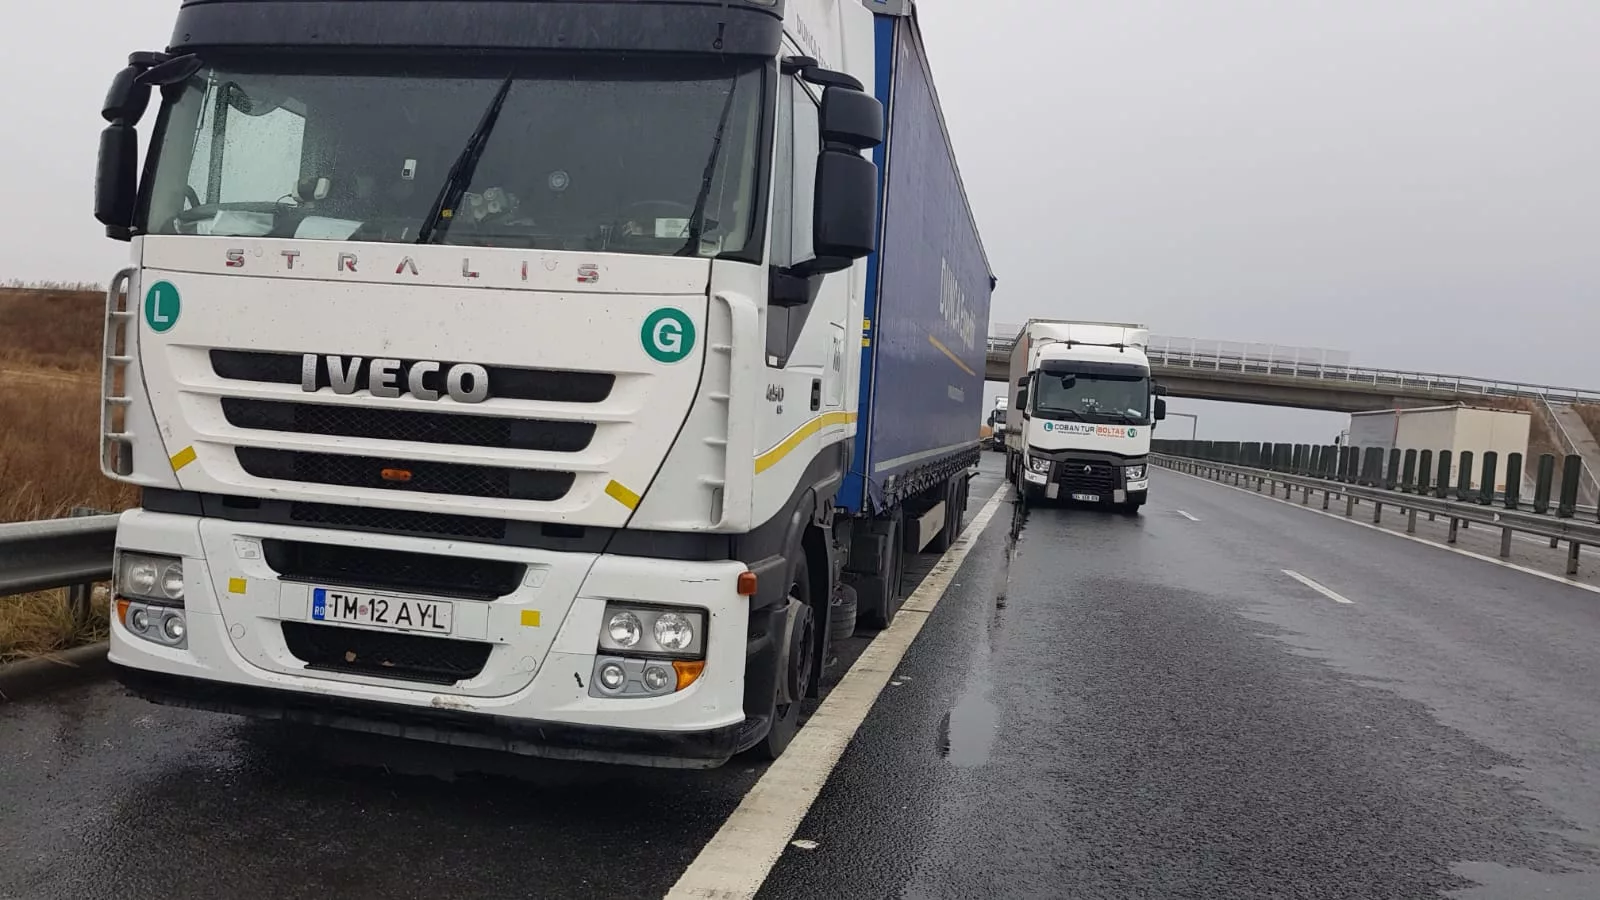 Interdicția de circulație este pentru camioane de peste 7,5 tone